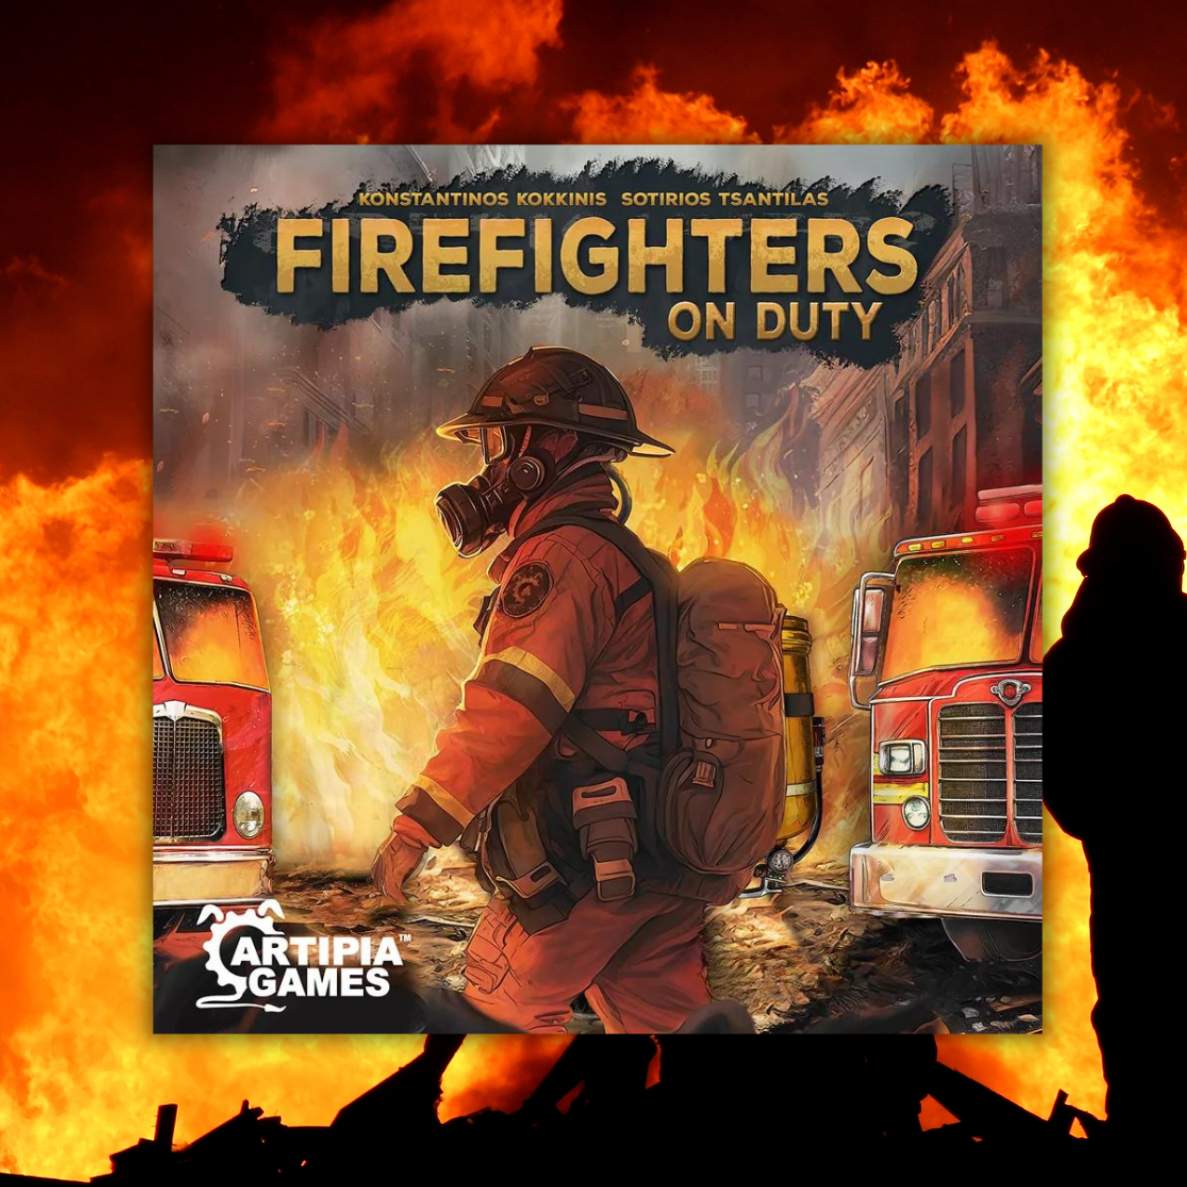 Okładka zapowiedzianej gry o tytule FireFighters on Duty, na obrazku widać strażaka na tle ognia